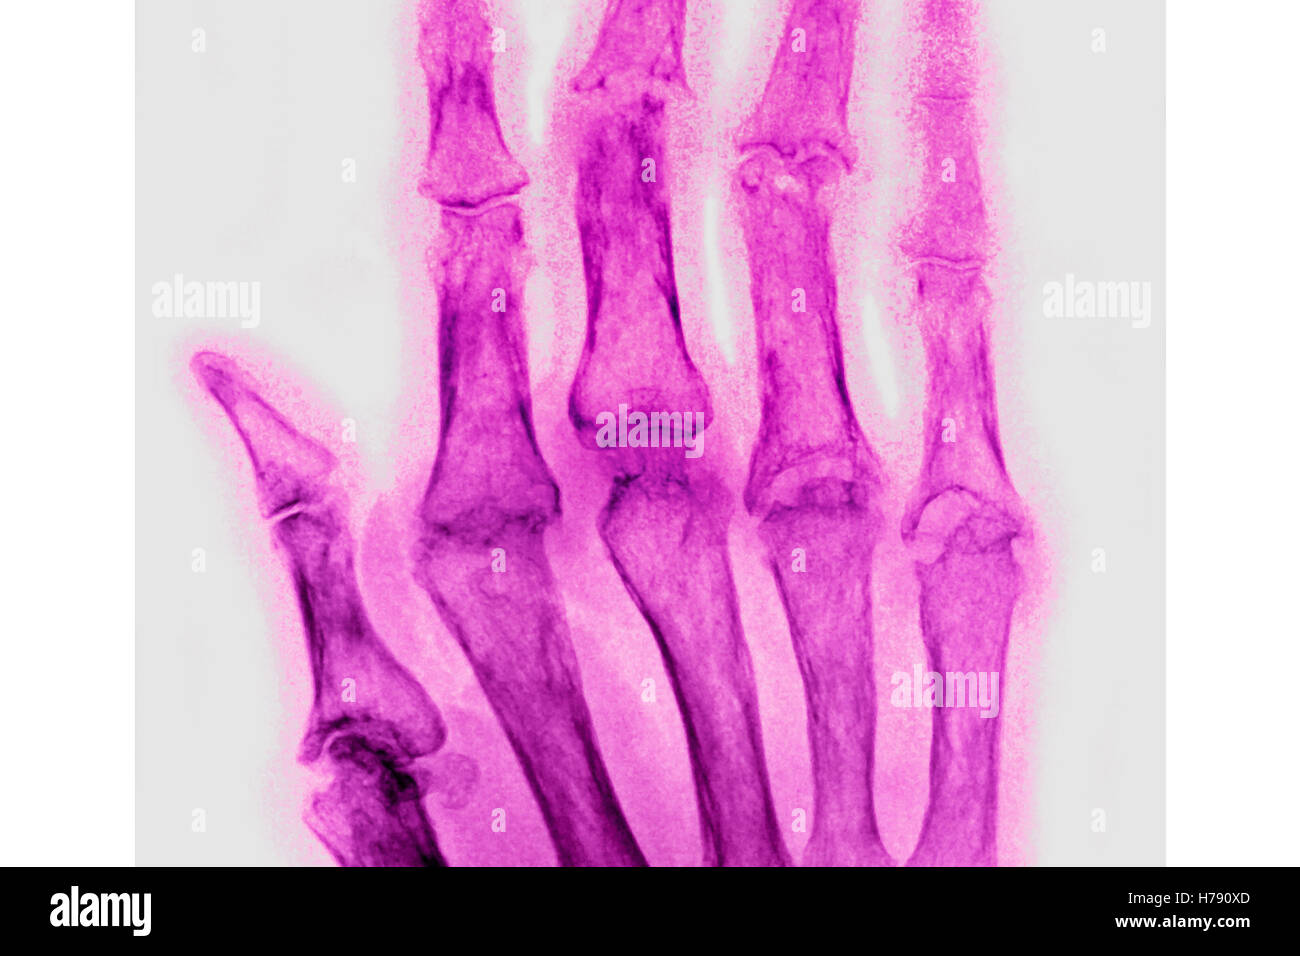 RHEUMATOID ARTHRITIS, X-RAY Stock Photo